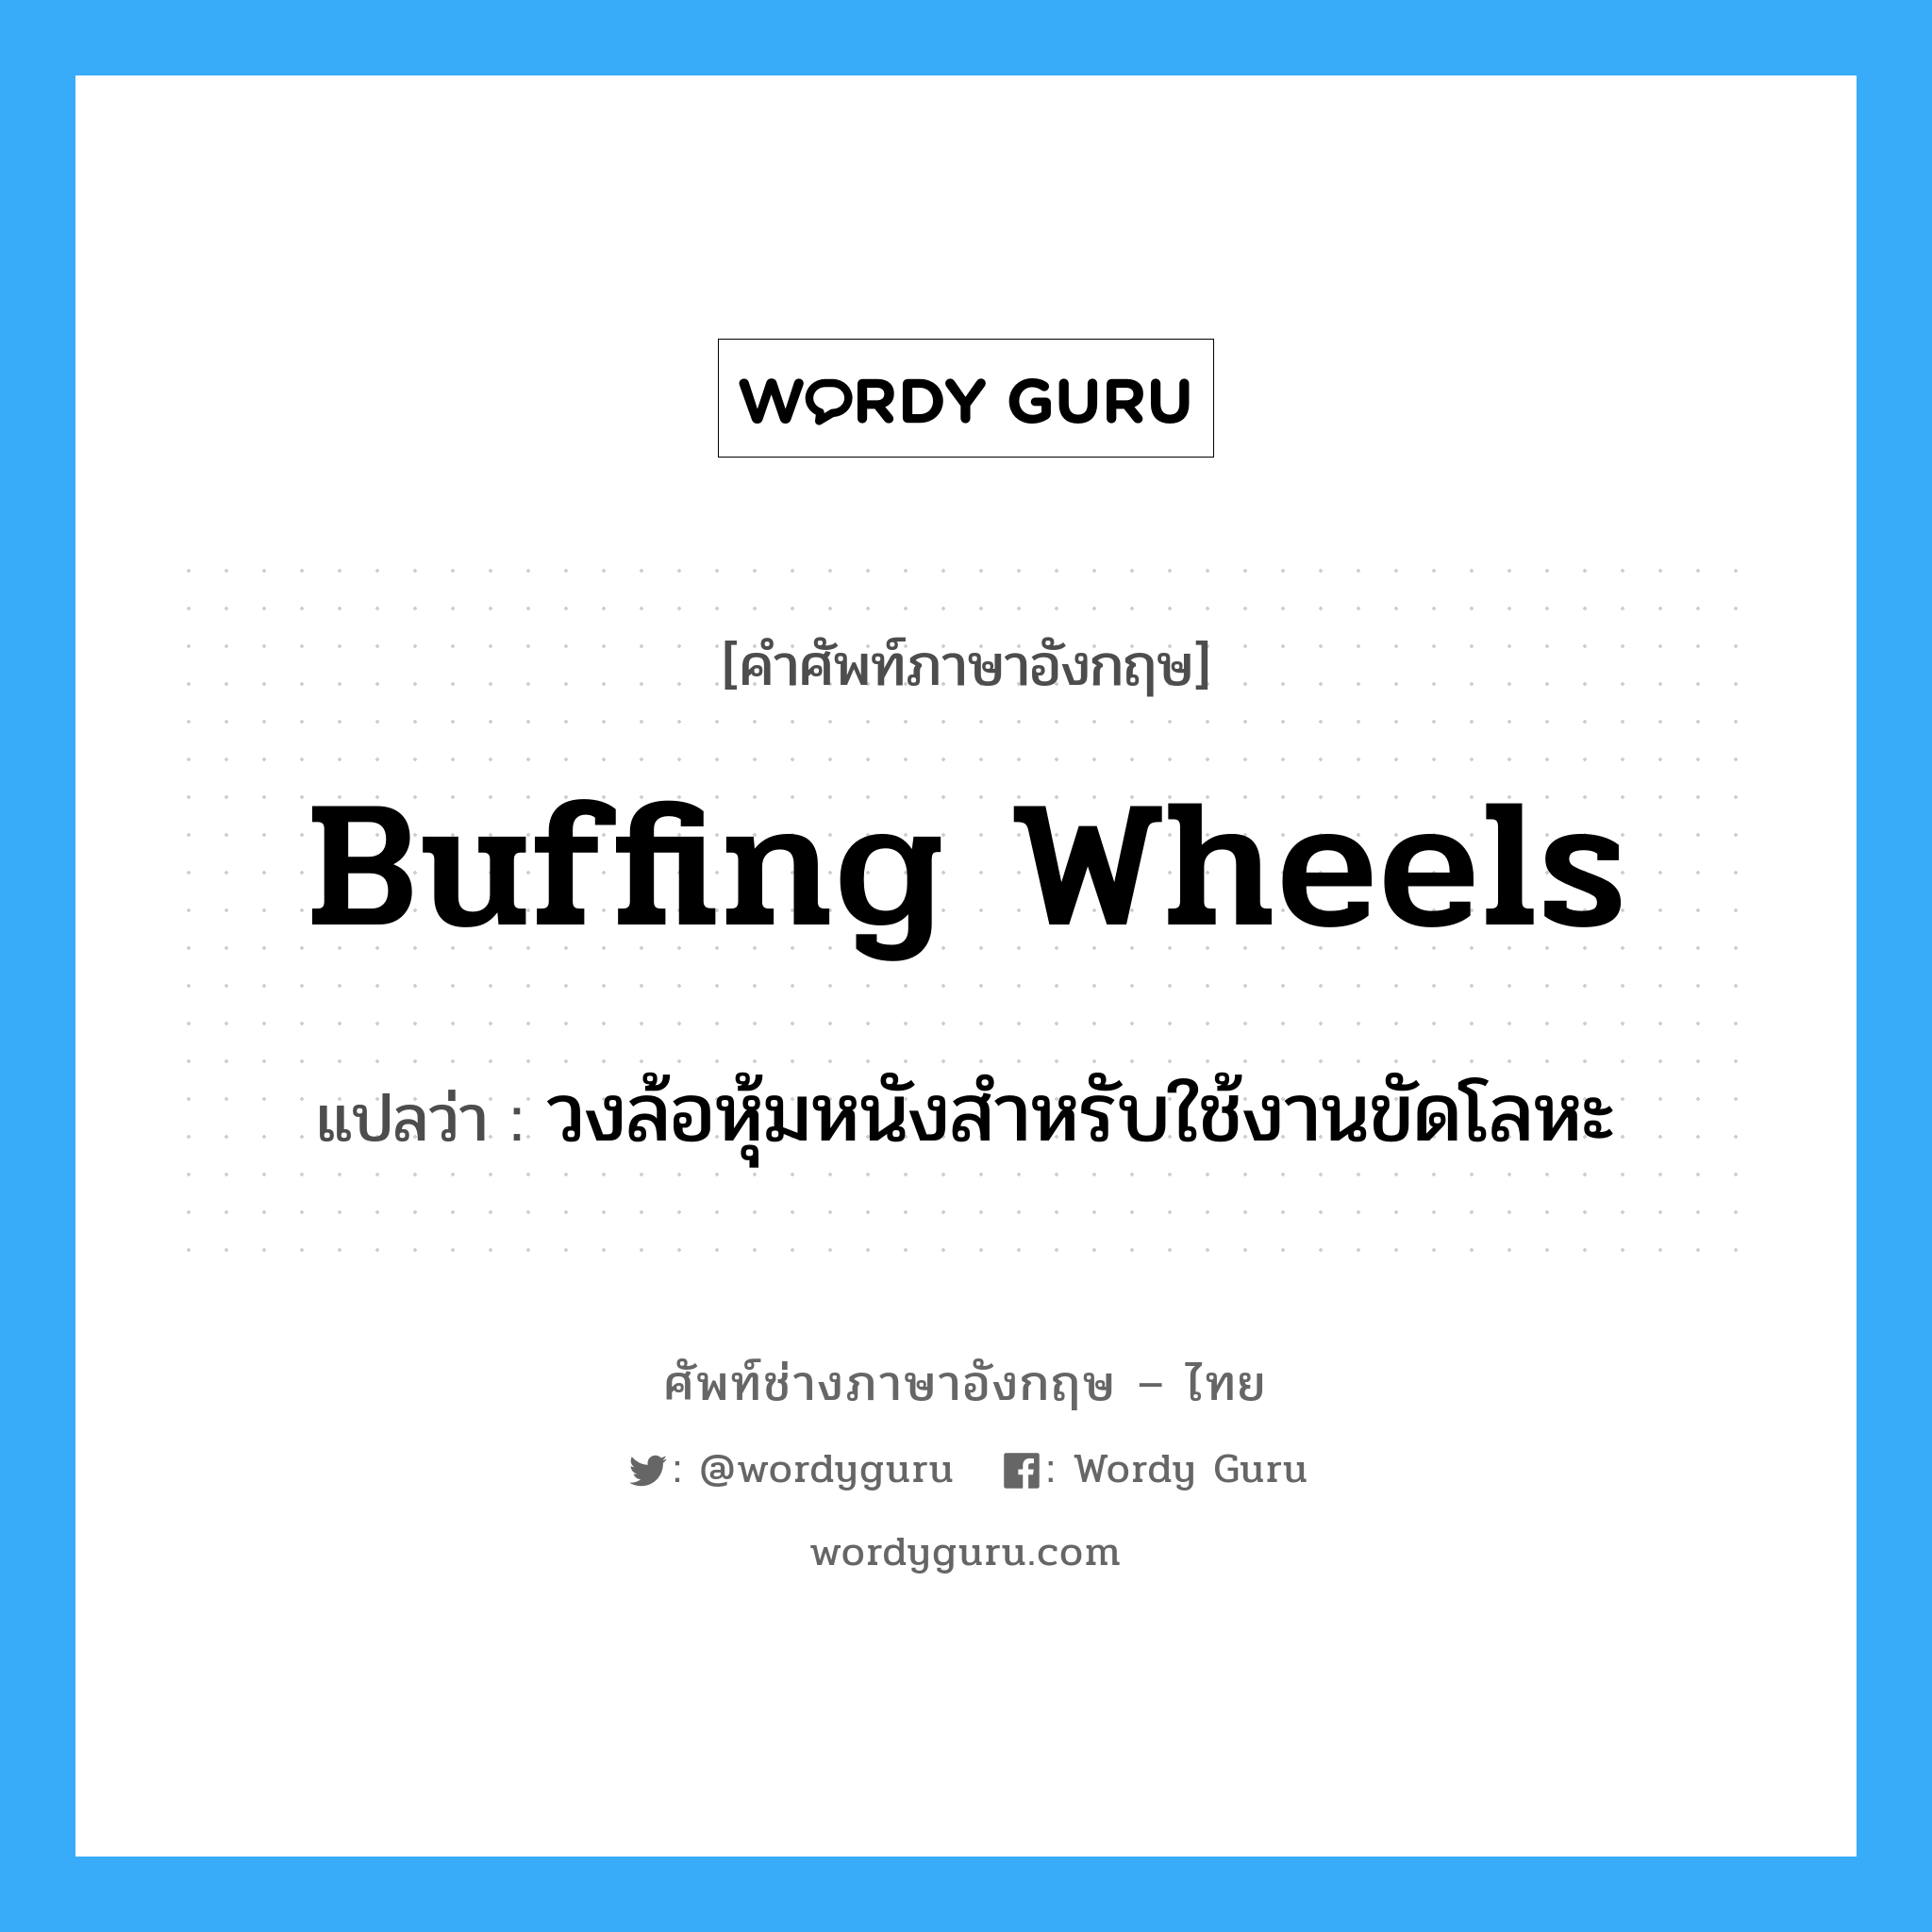 buffing wheels แปลว่า?, คำศัพท์ช่างภาษาอังกฤษ - ไทย buffing wheels คำศัพท์ภาษาอังกฤษ buffing wheels แปลว่า วงล้อหุ้มหนังสำหรับใช้งานขัดโลหะ